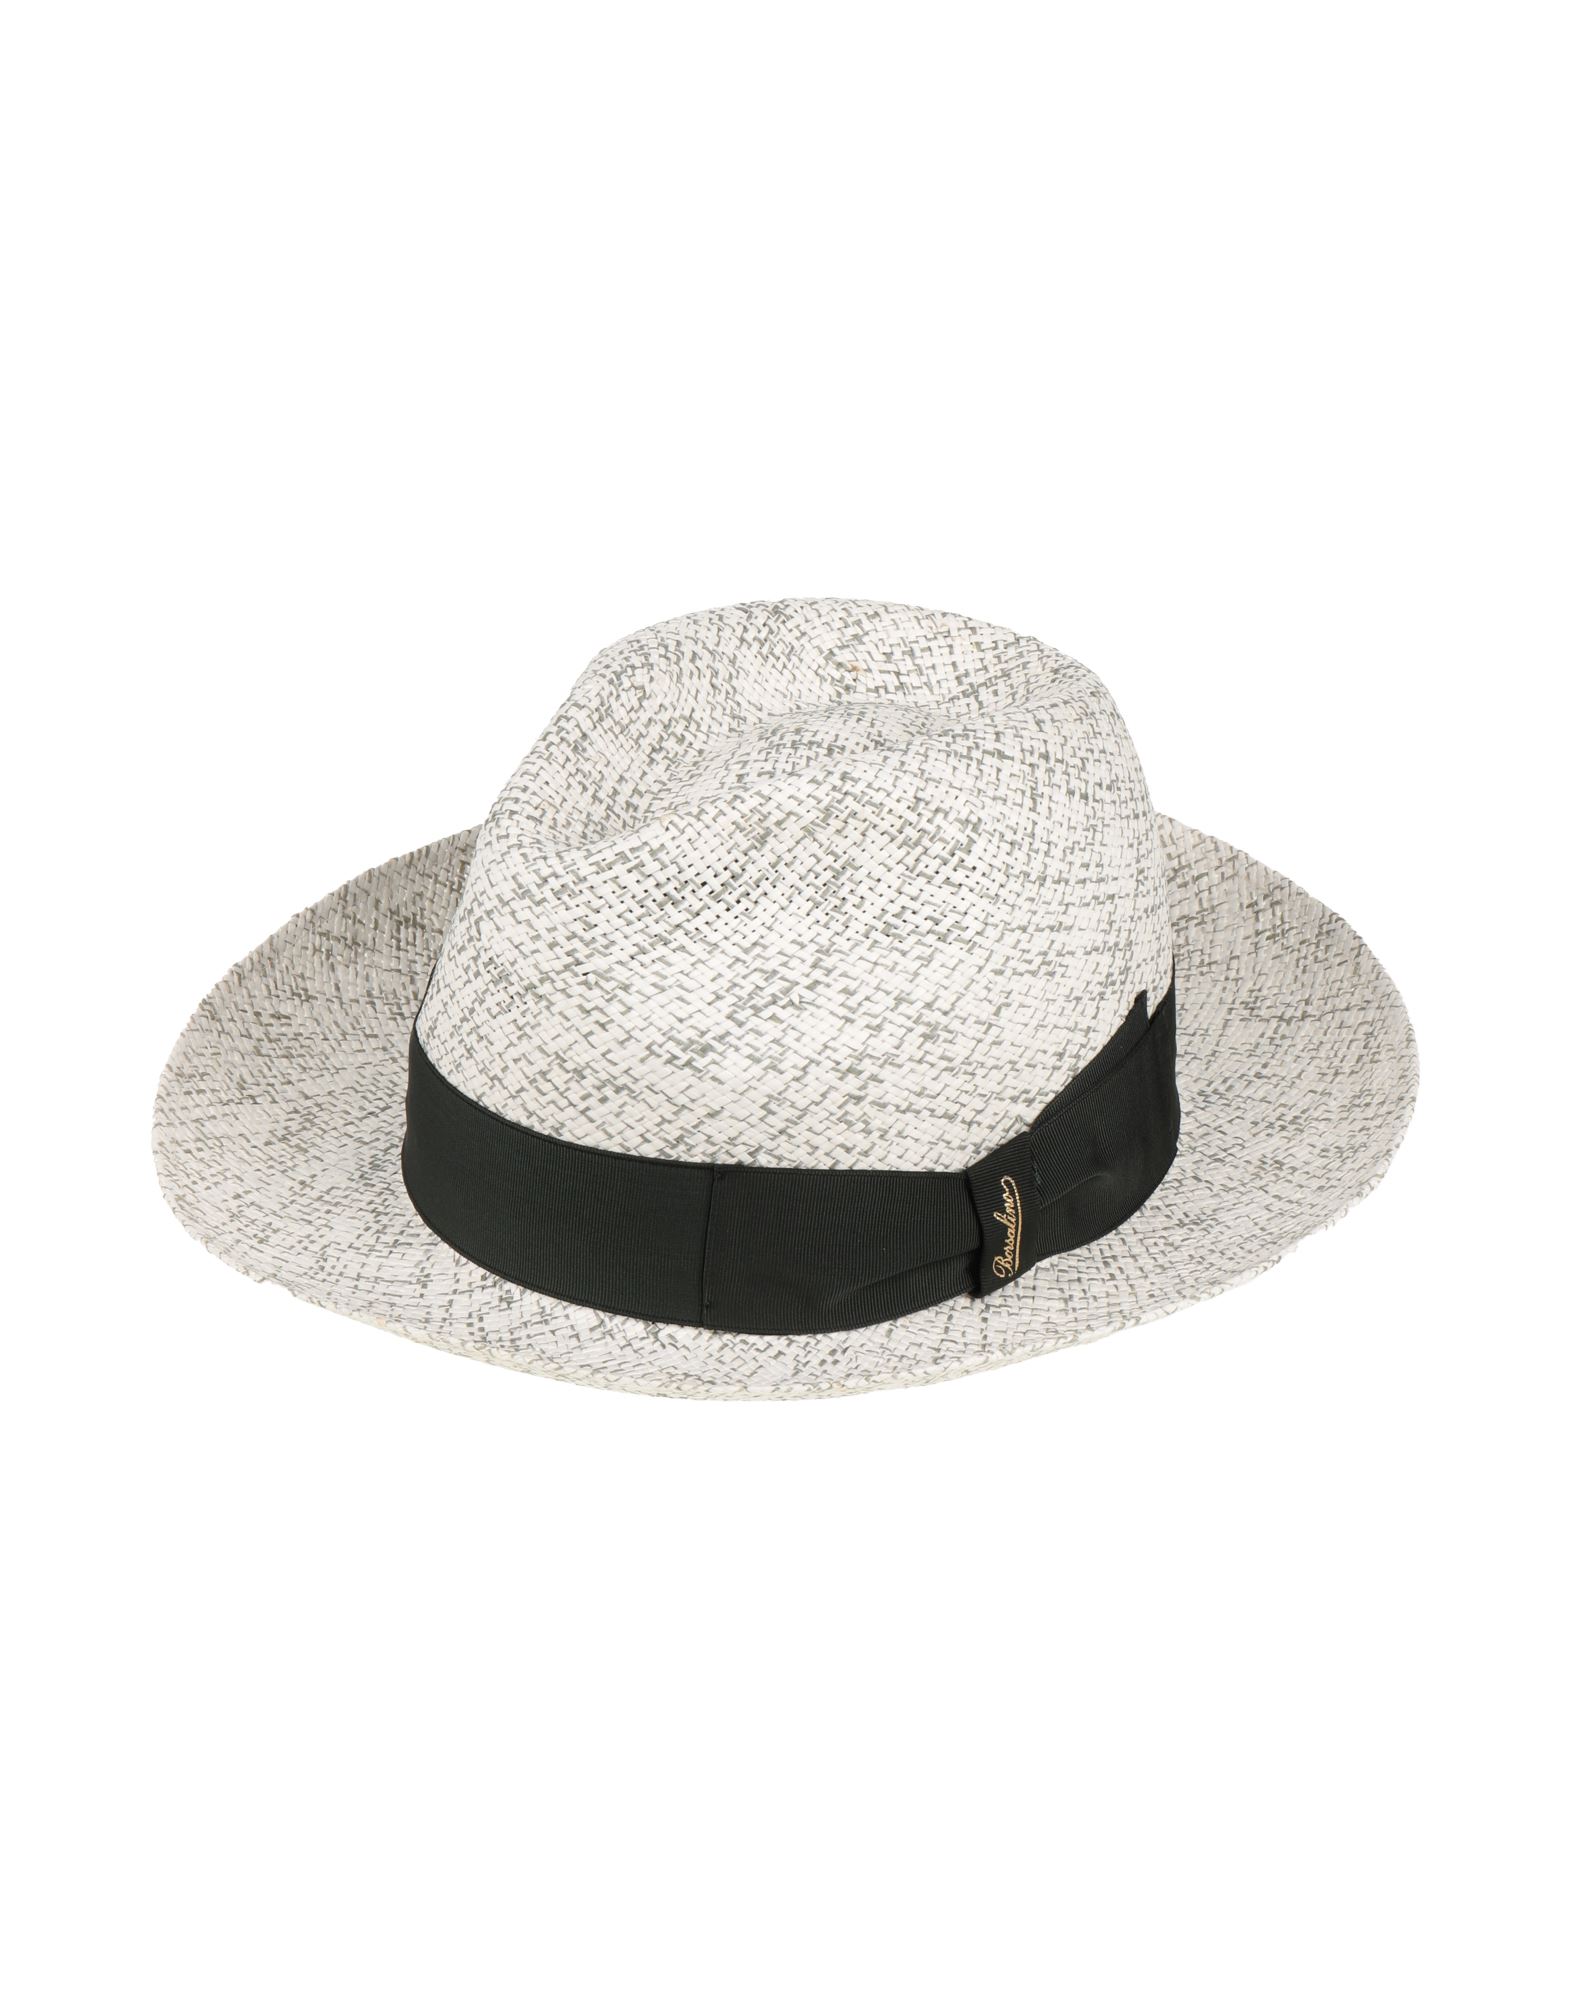 ボルサリーノ(Borsalino) パナマハット メンズ帽子・キャップ | 通販 